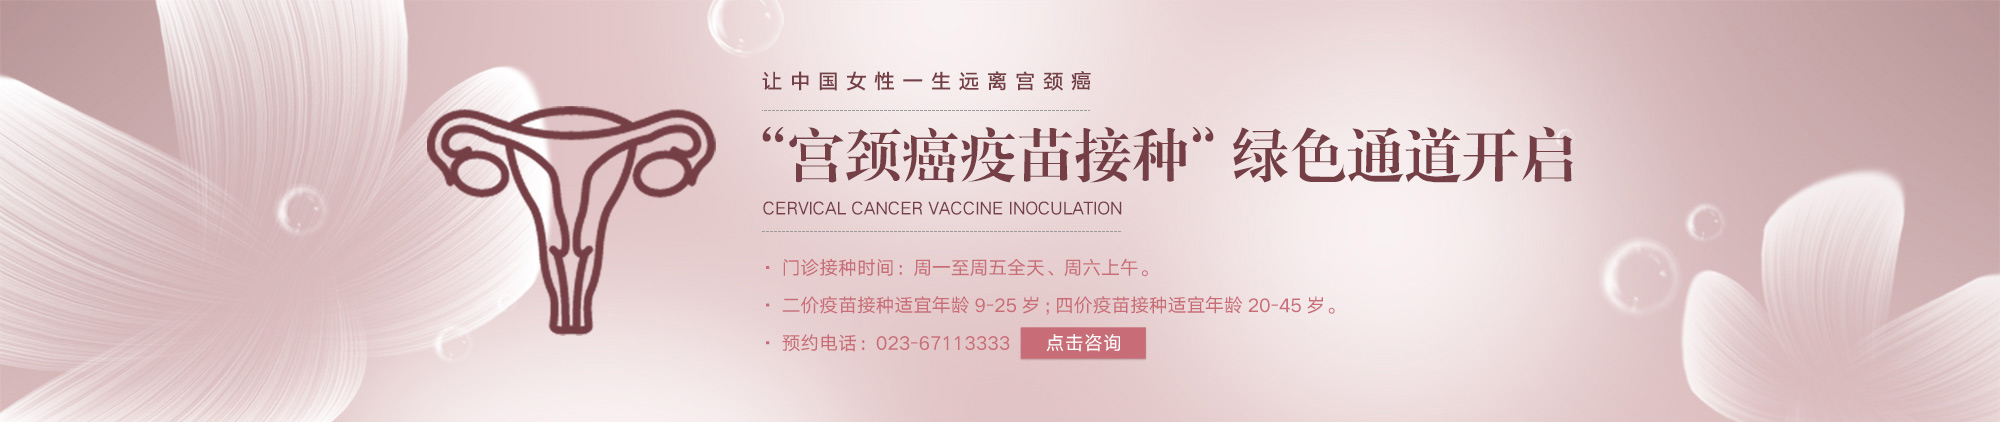 重庆安琪儿妇产医院接种宫颈癌疫苗